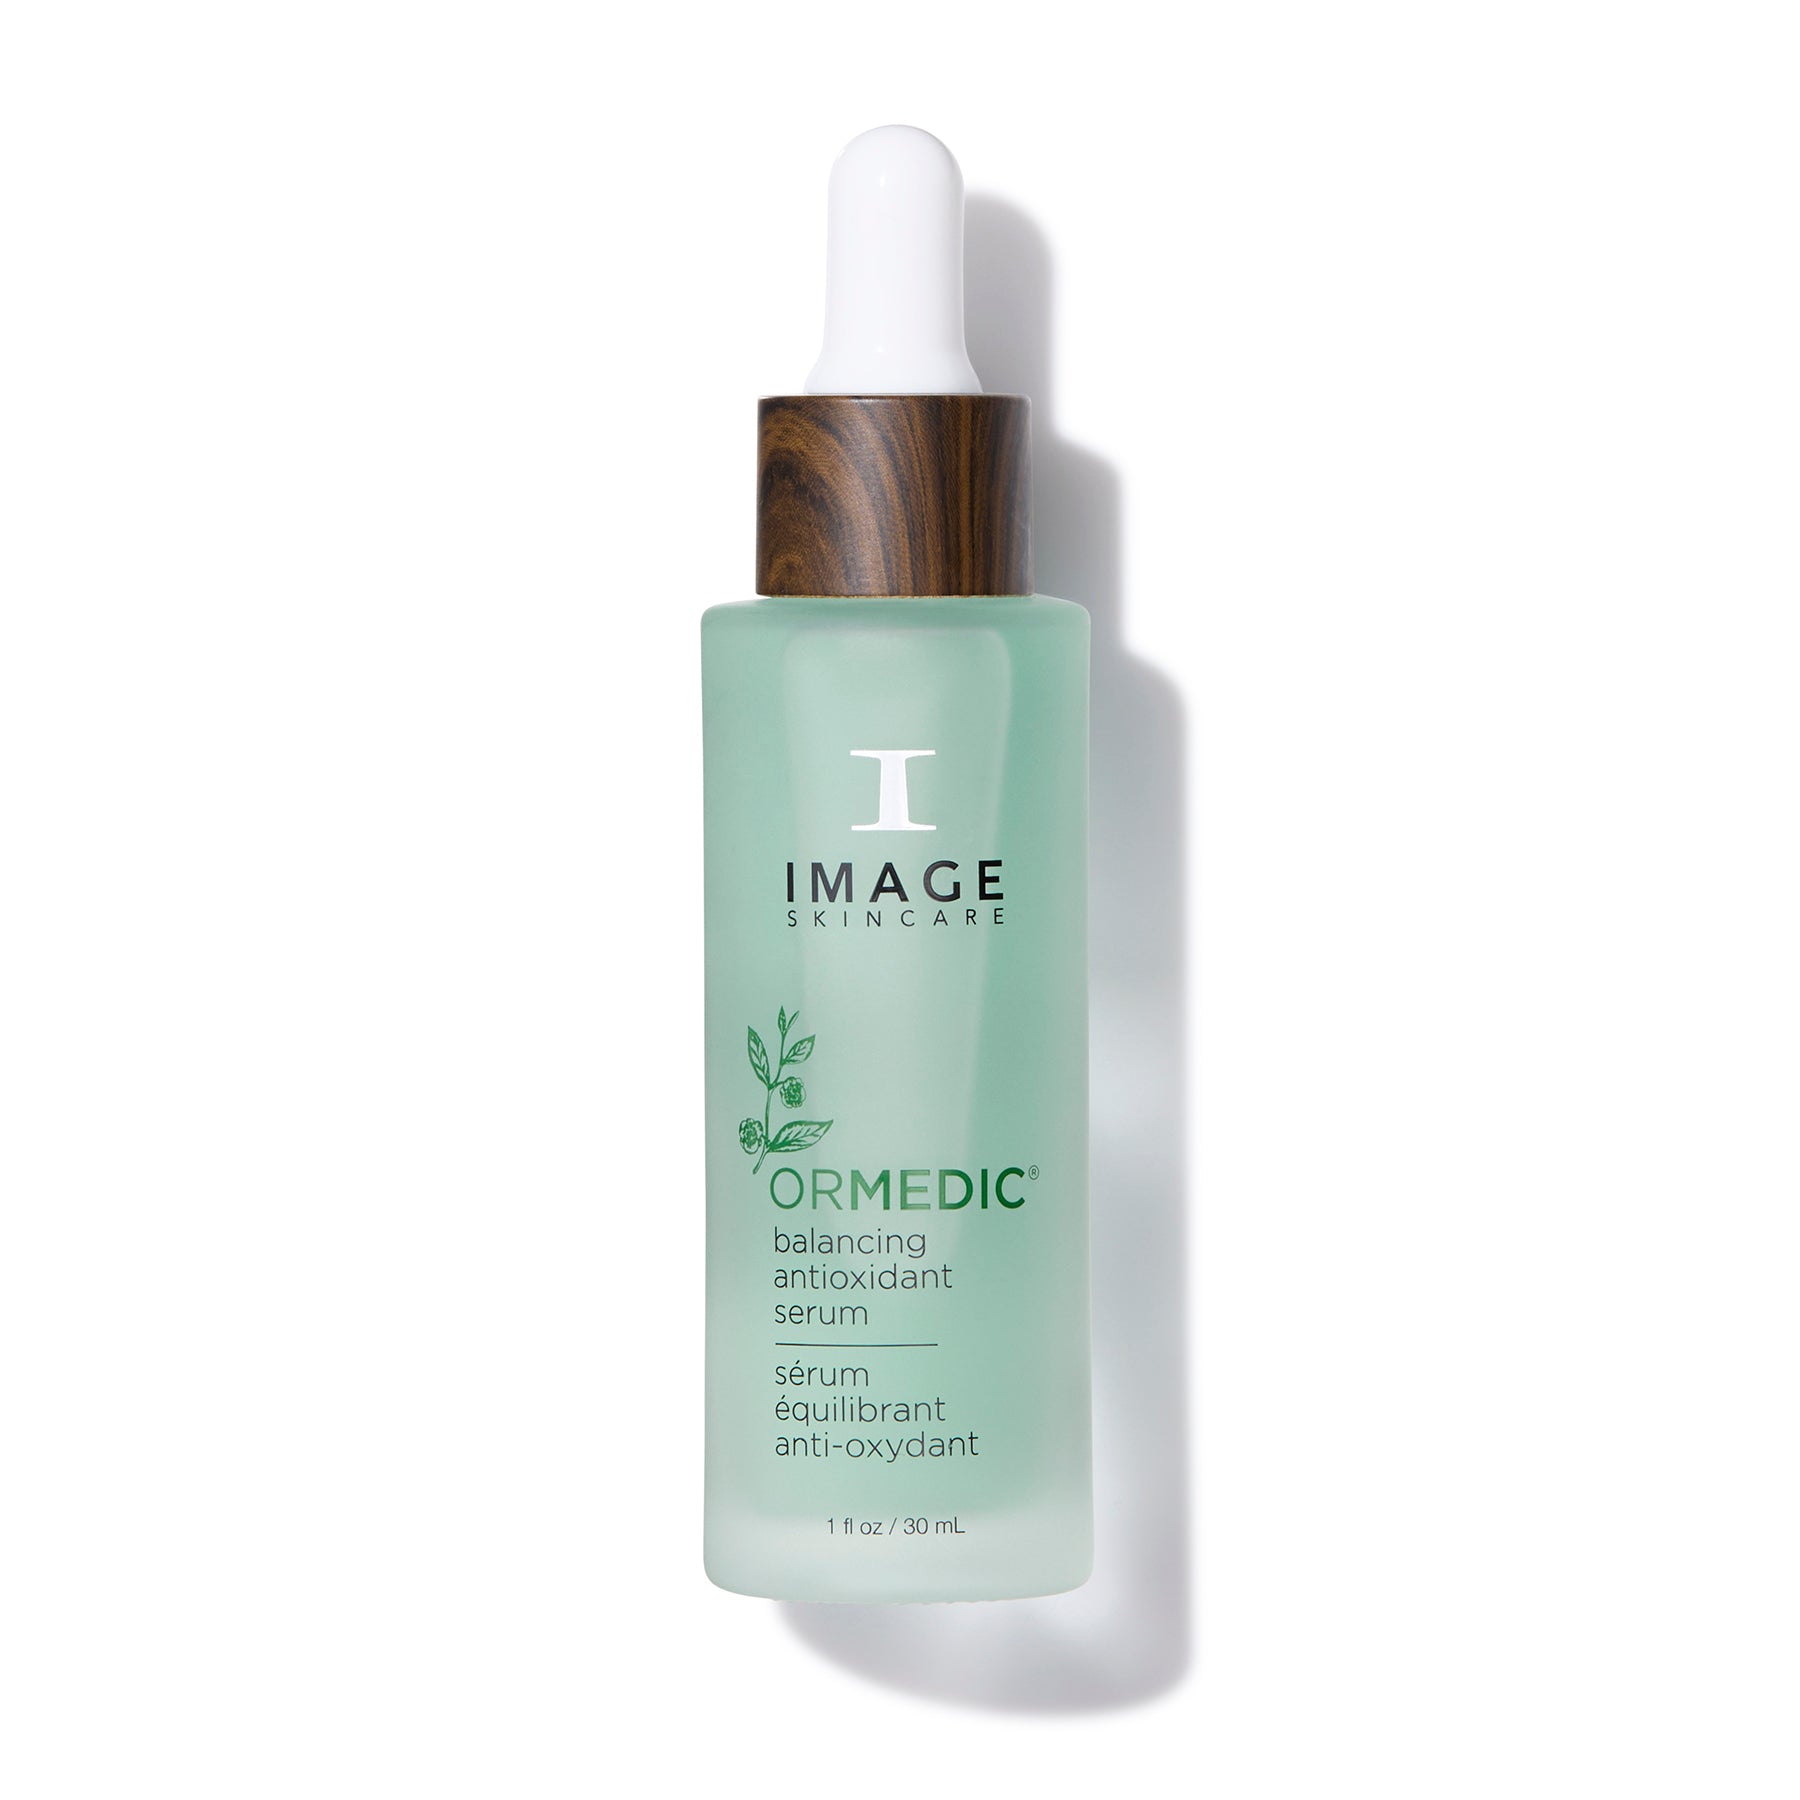 Bottle of Image Skincare ORMEDIC balancing antioxidant serum.